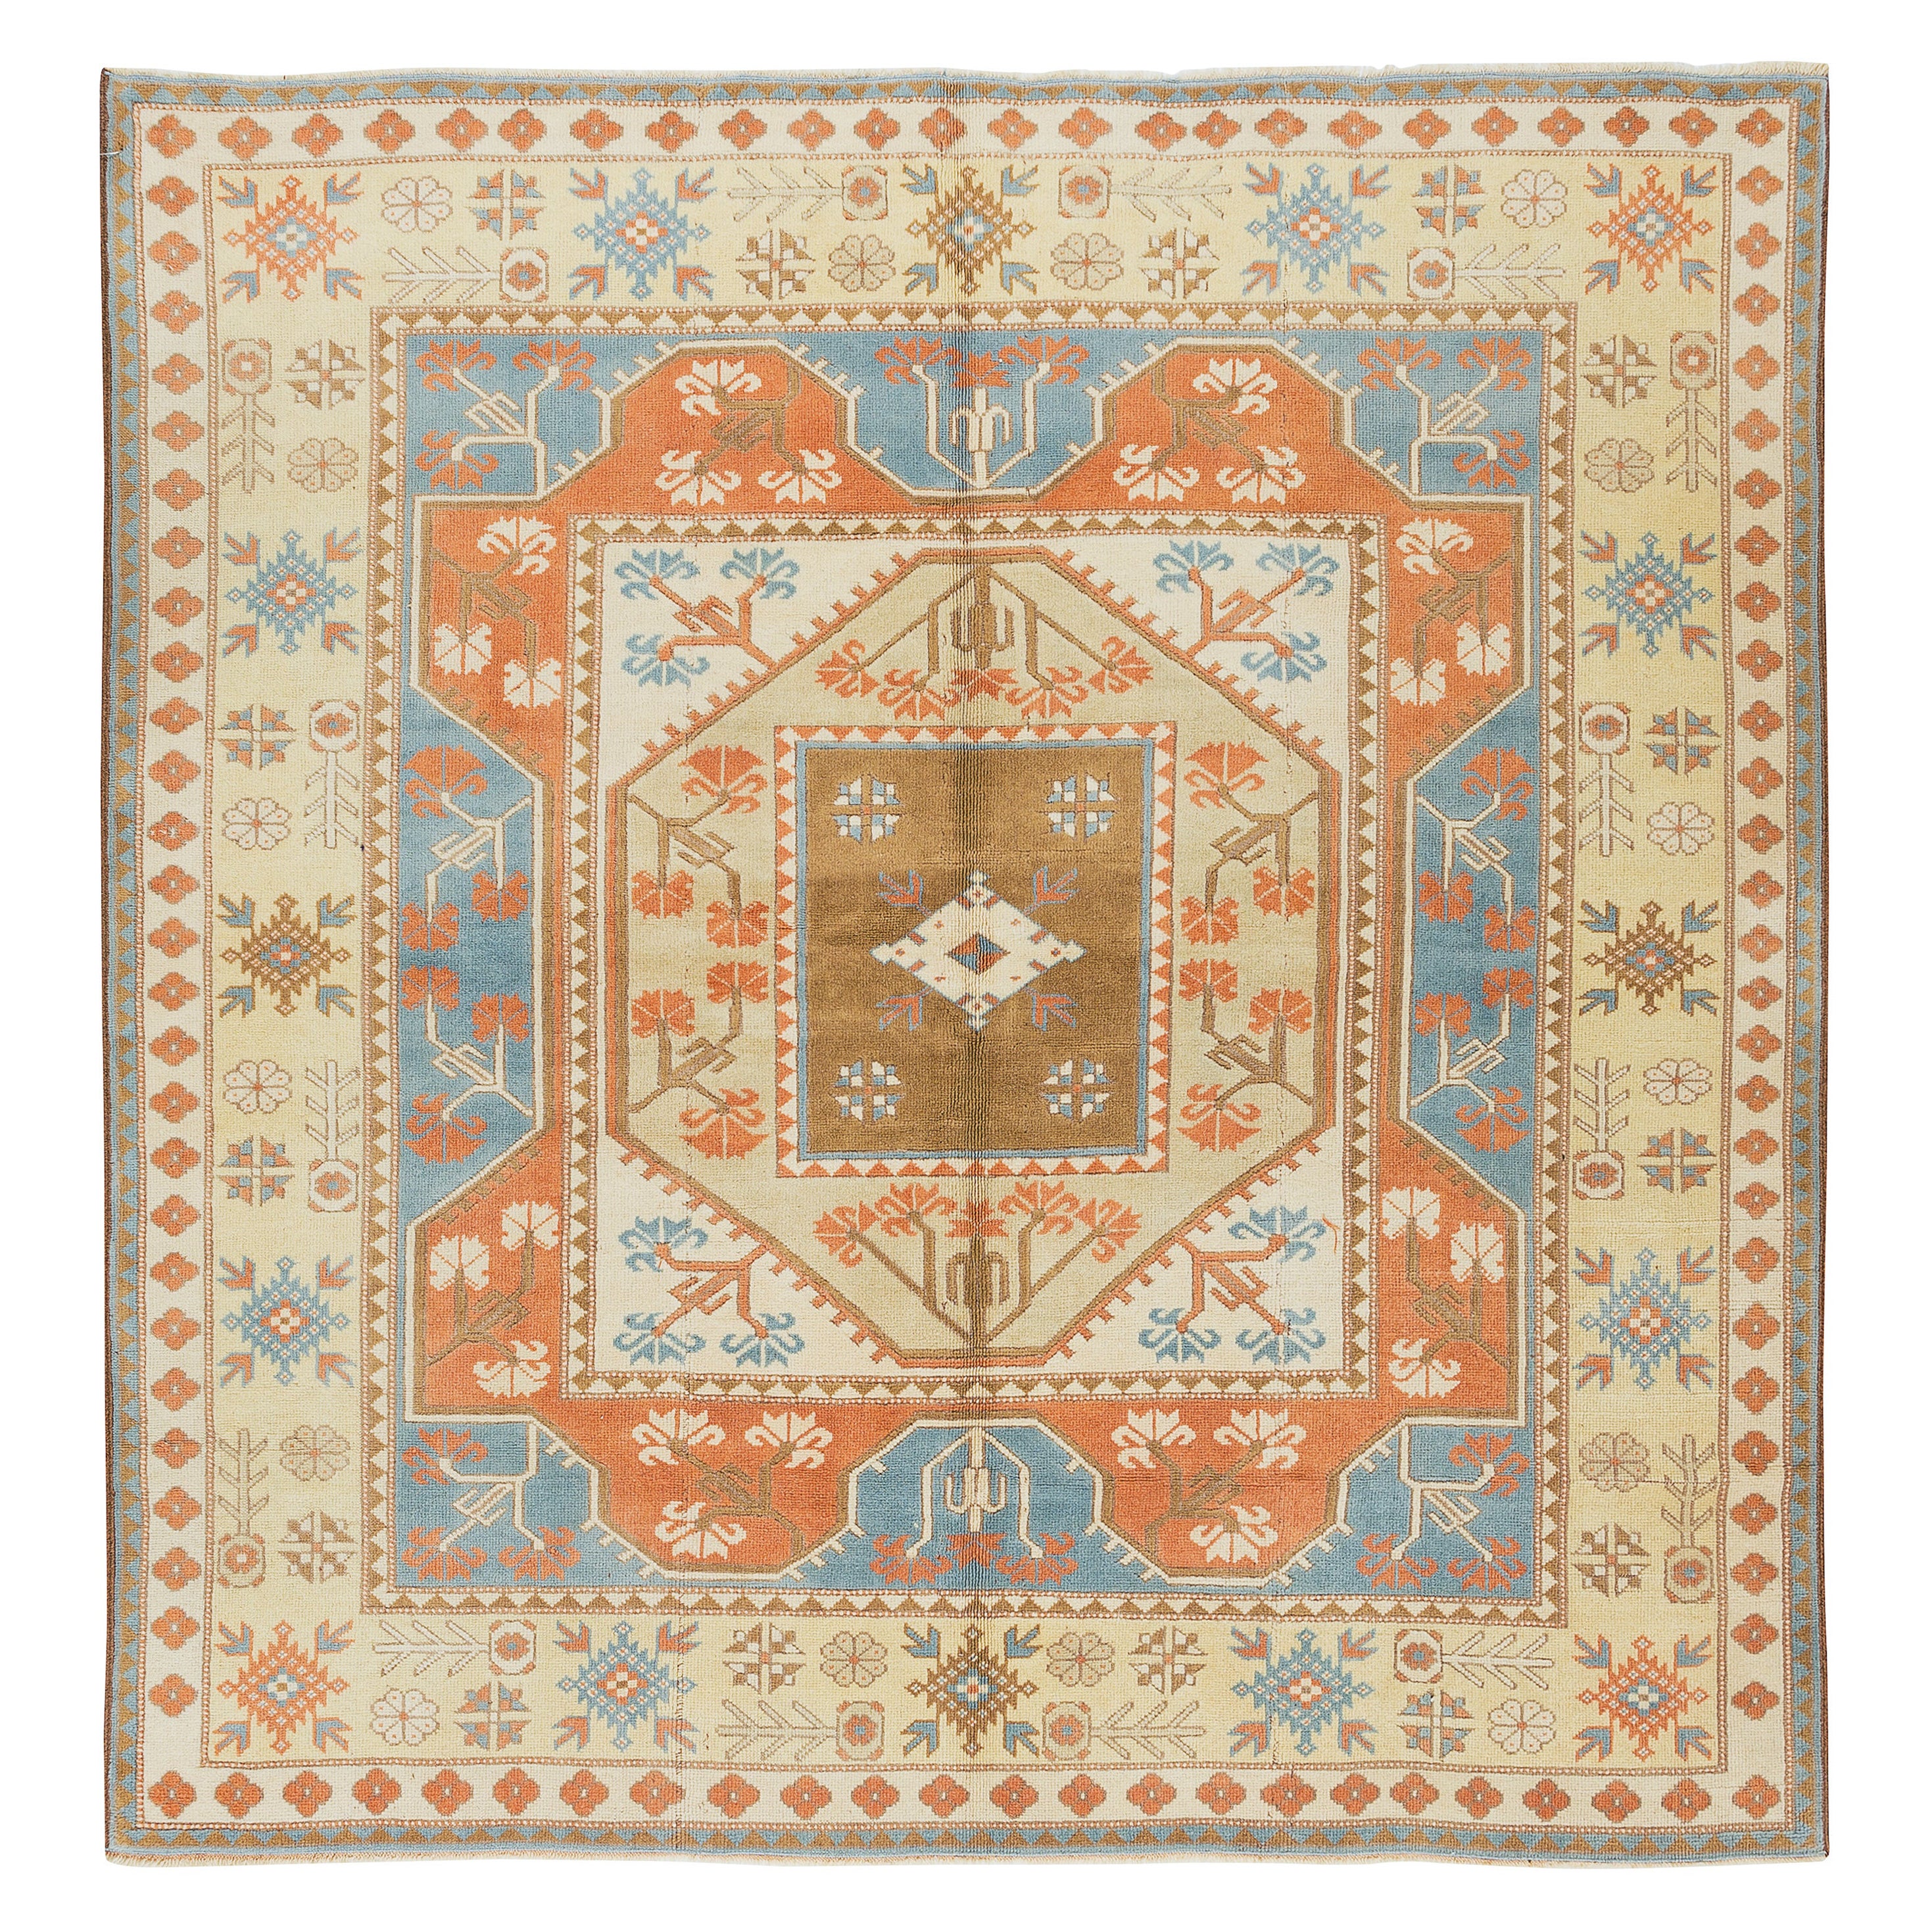 Tapis turc artisanal rare, tapis géométrique unique et vintage de taille 6,5 x 6,6 m en vente